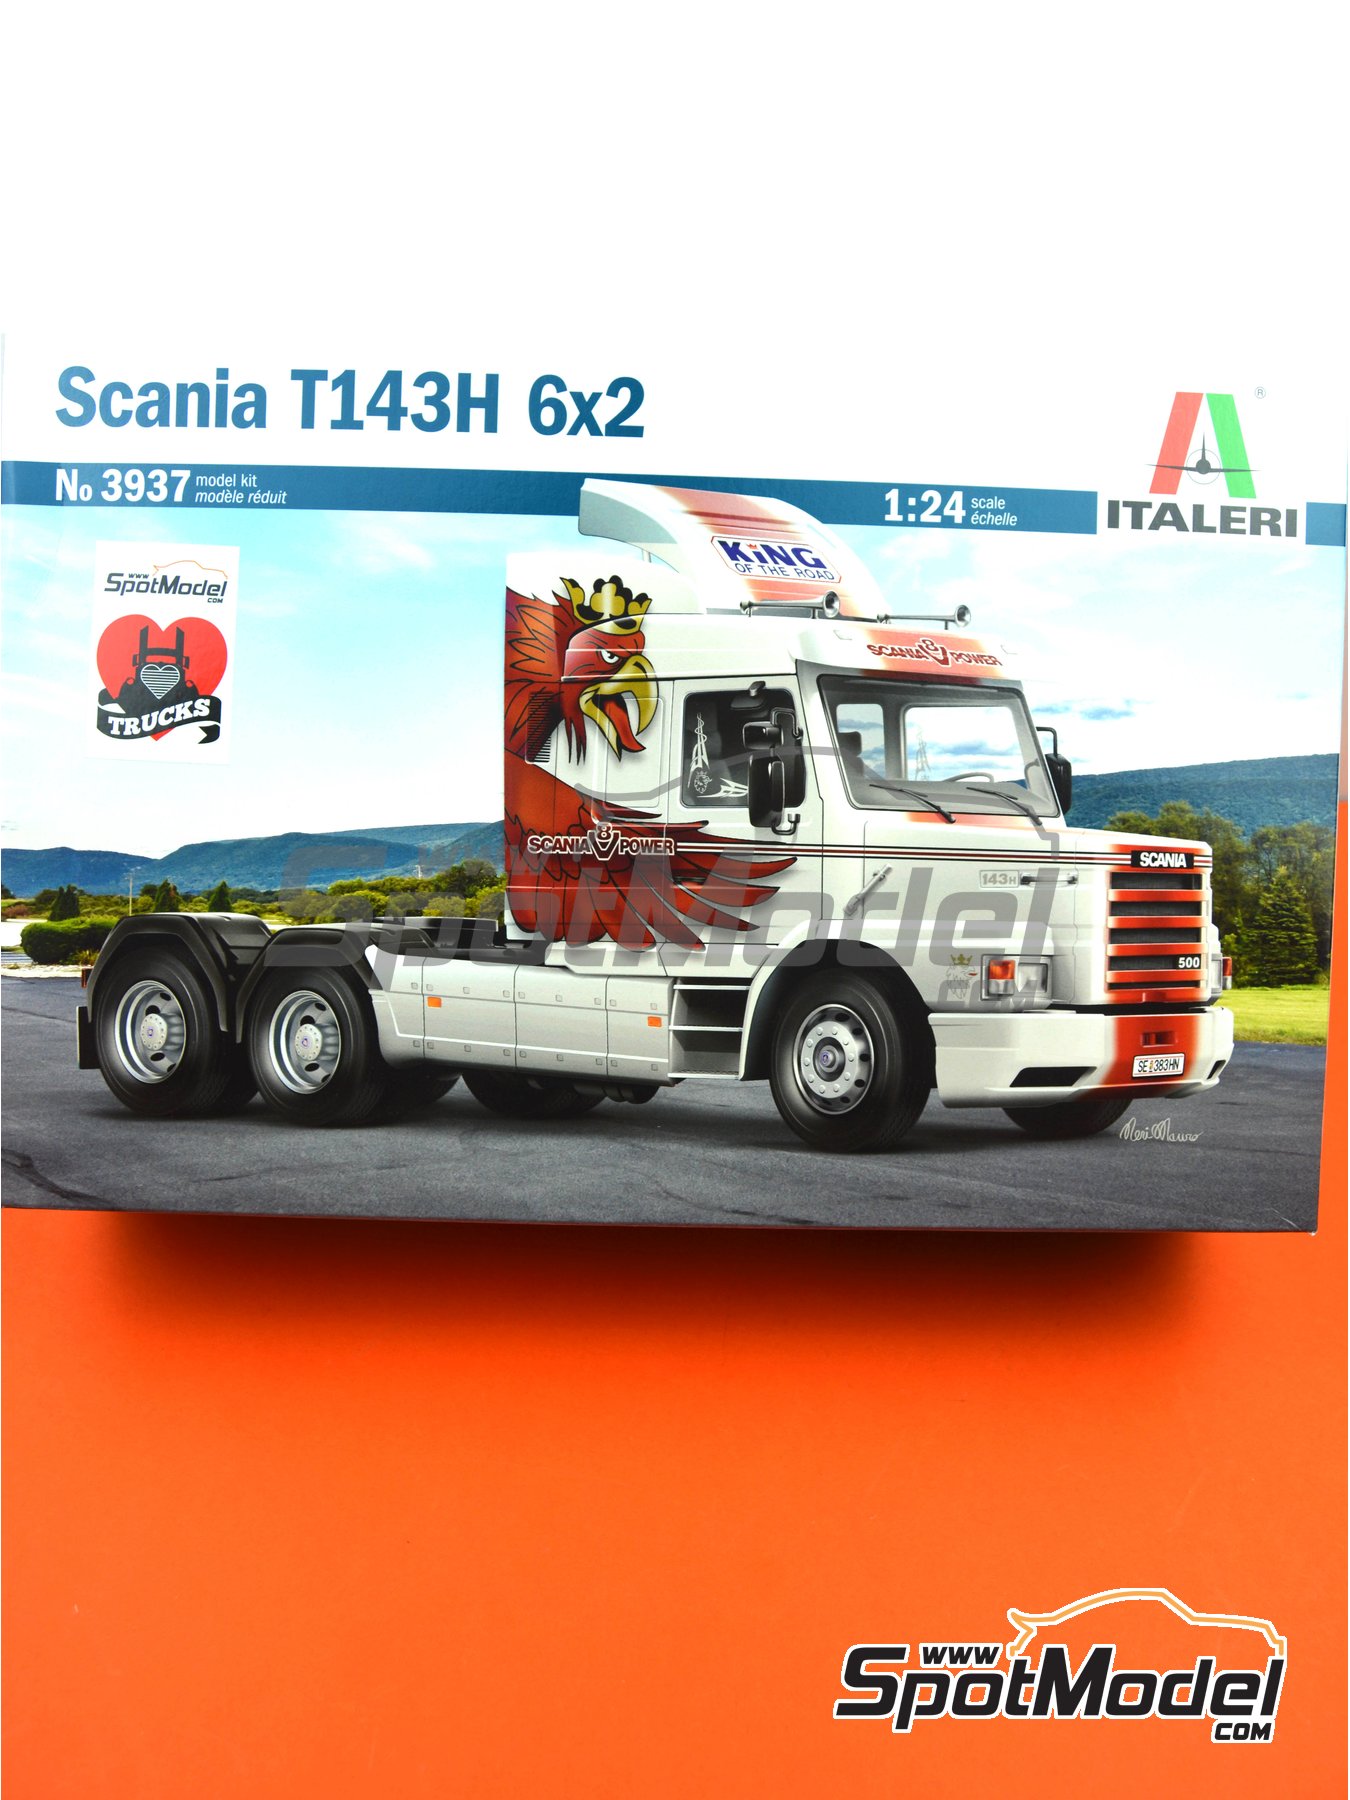 Scania T143H 6X2 Kit ITALERI 1:24 IT3937 Model